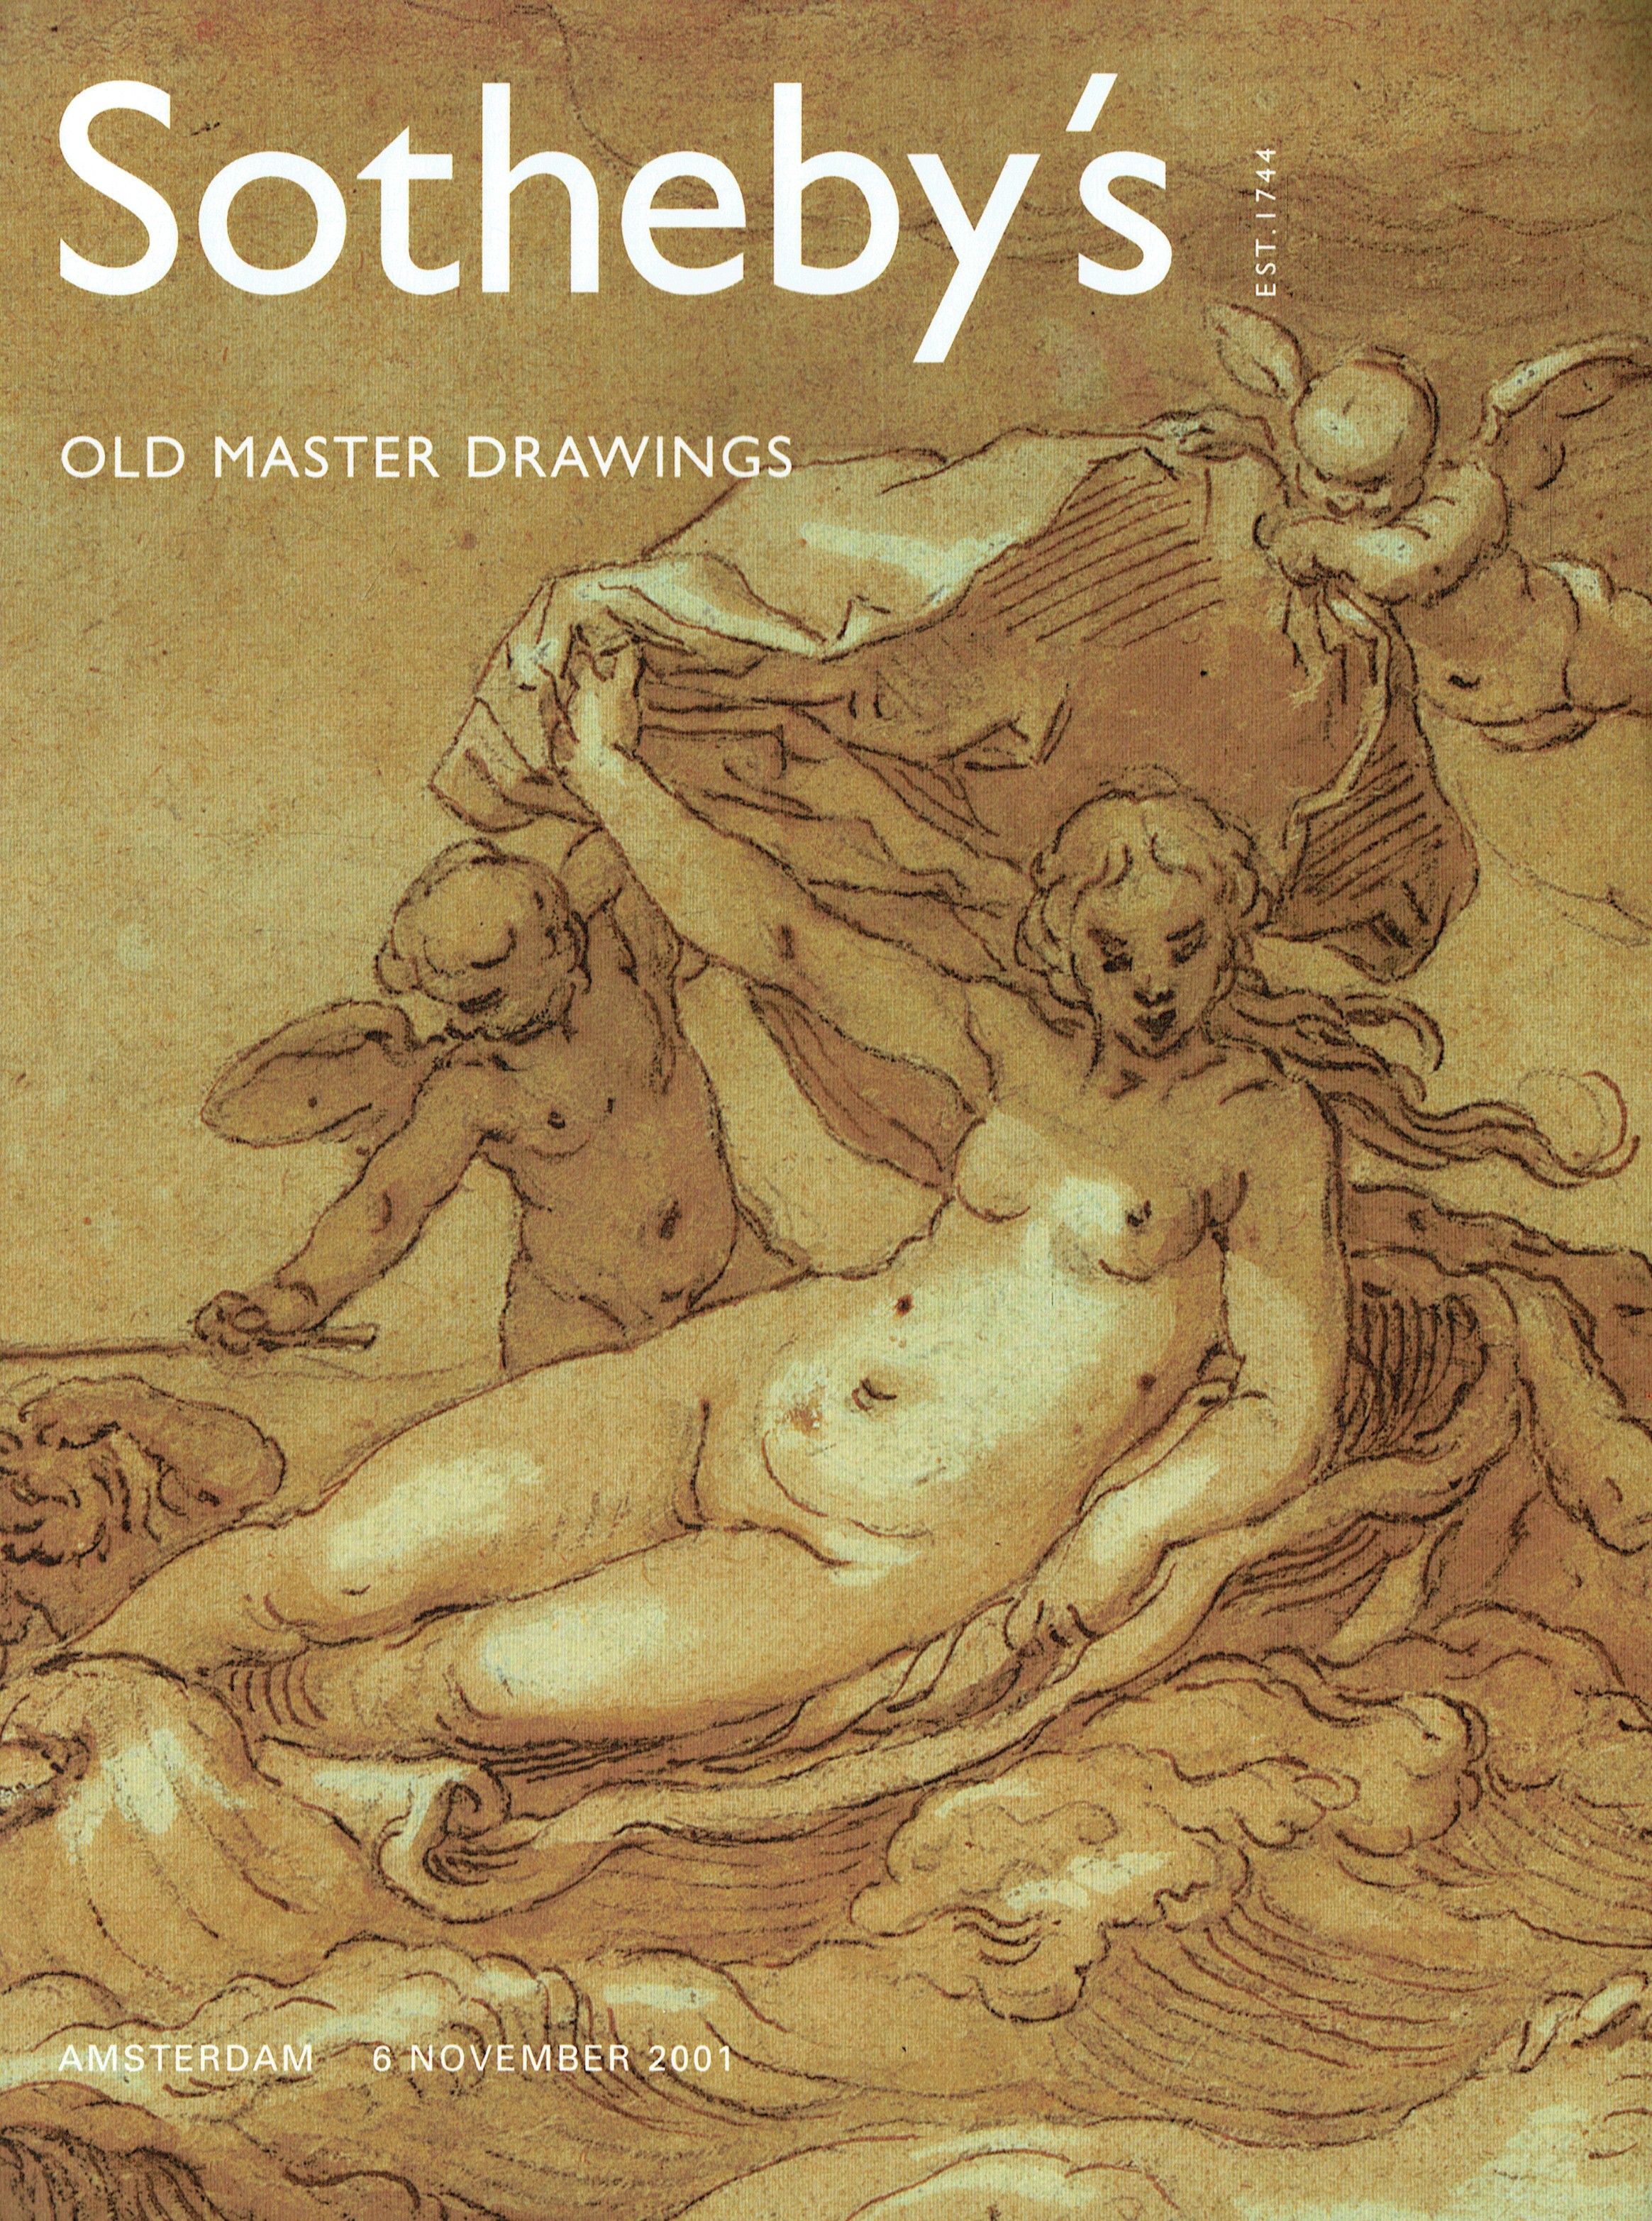 Sothebys November 2001 Old Master Drawings (Digital Only)